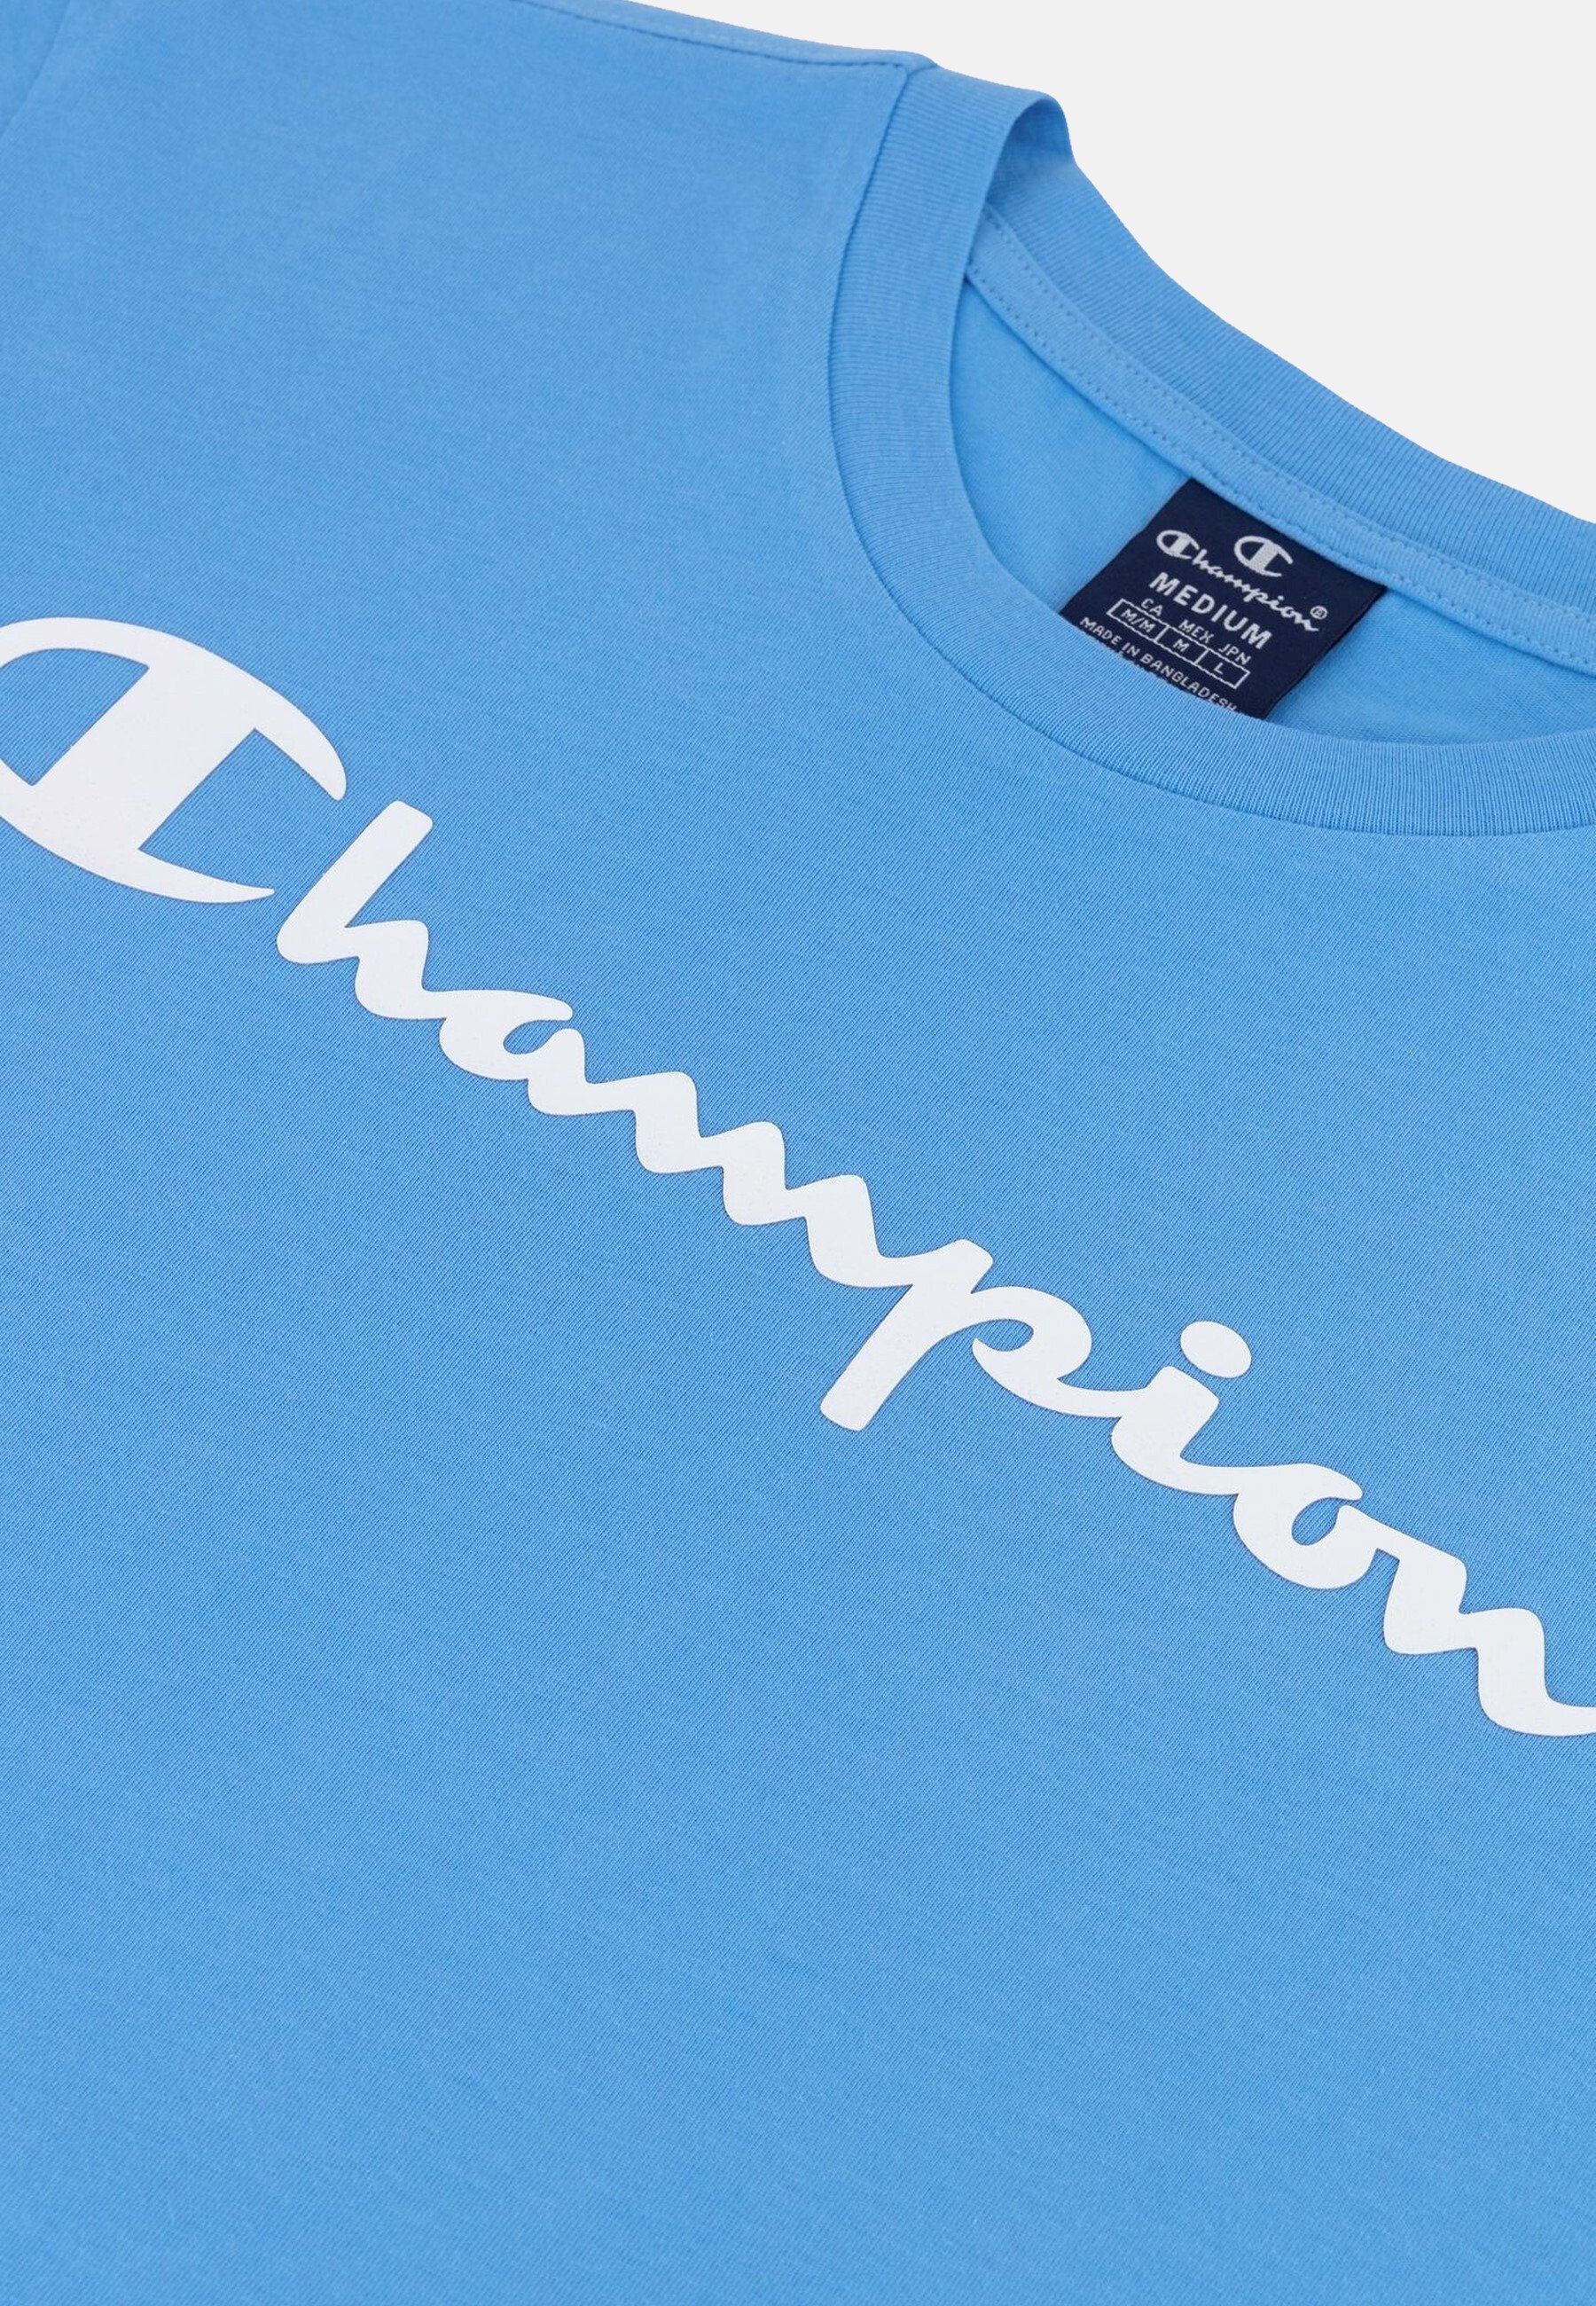 Rundhals-T-Shirt mit T-Shirt hellblau aus Shirt Baumwolle Champion